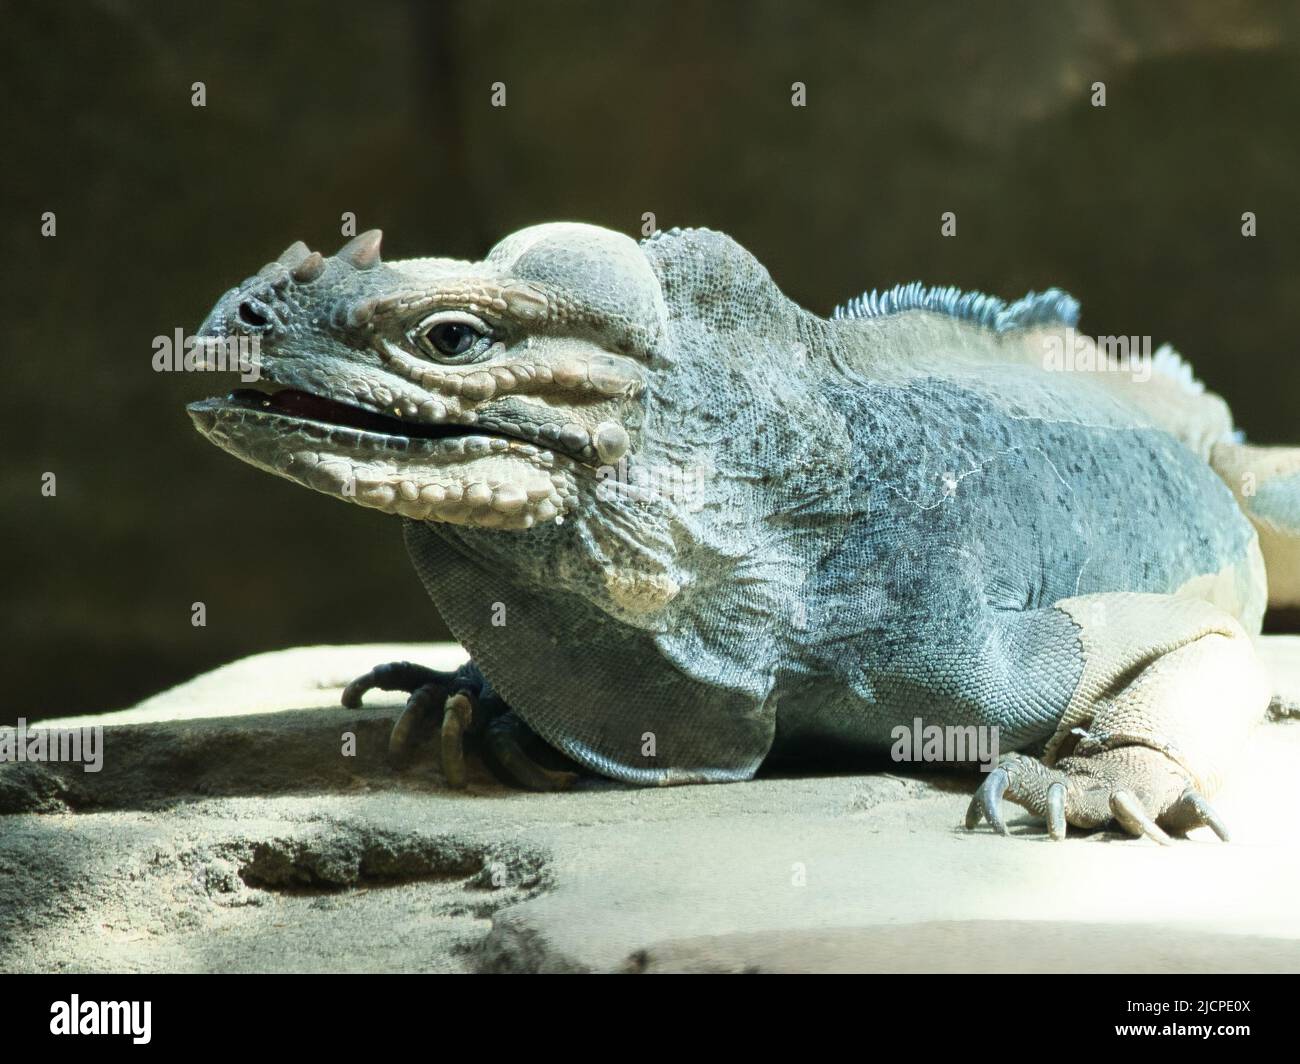 Großes Leguan, das auf einem Stein liegt. Dorniger Kamm und schuppige Haut. Tierfoto eines Reptils Stockfoto